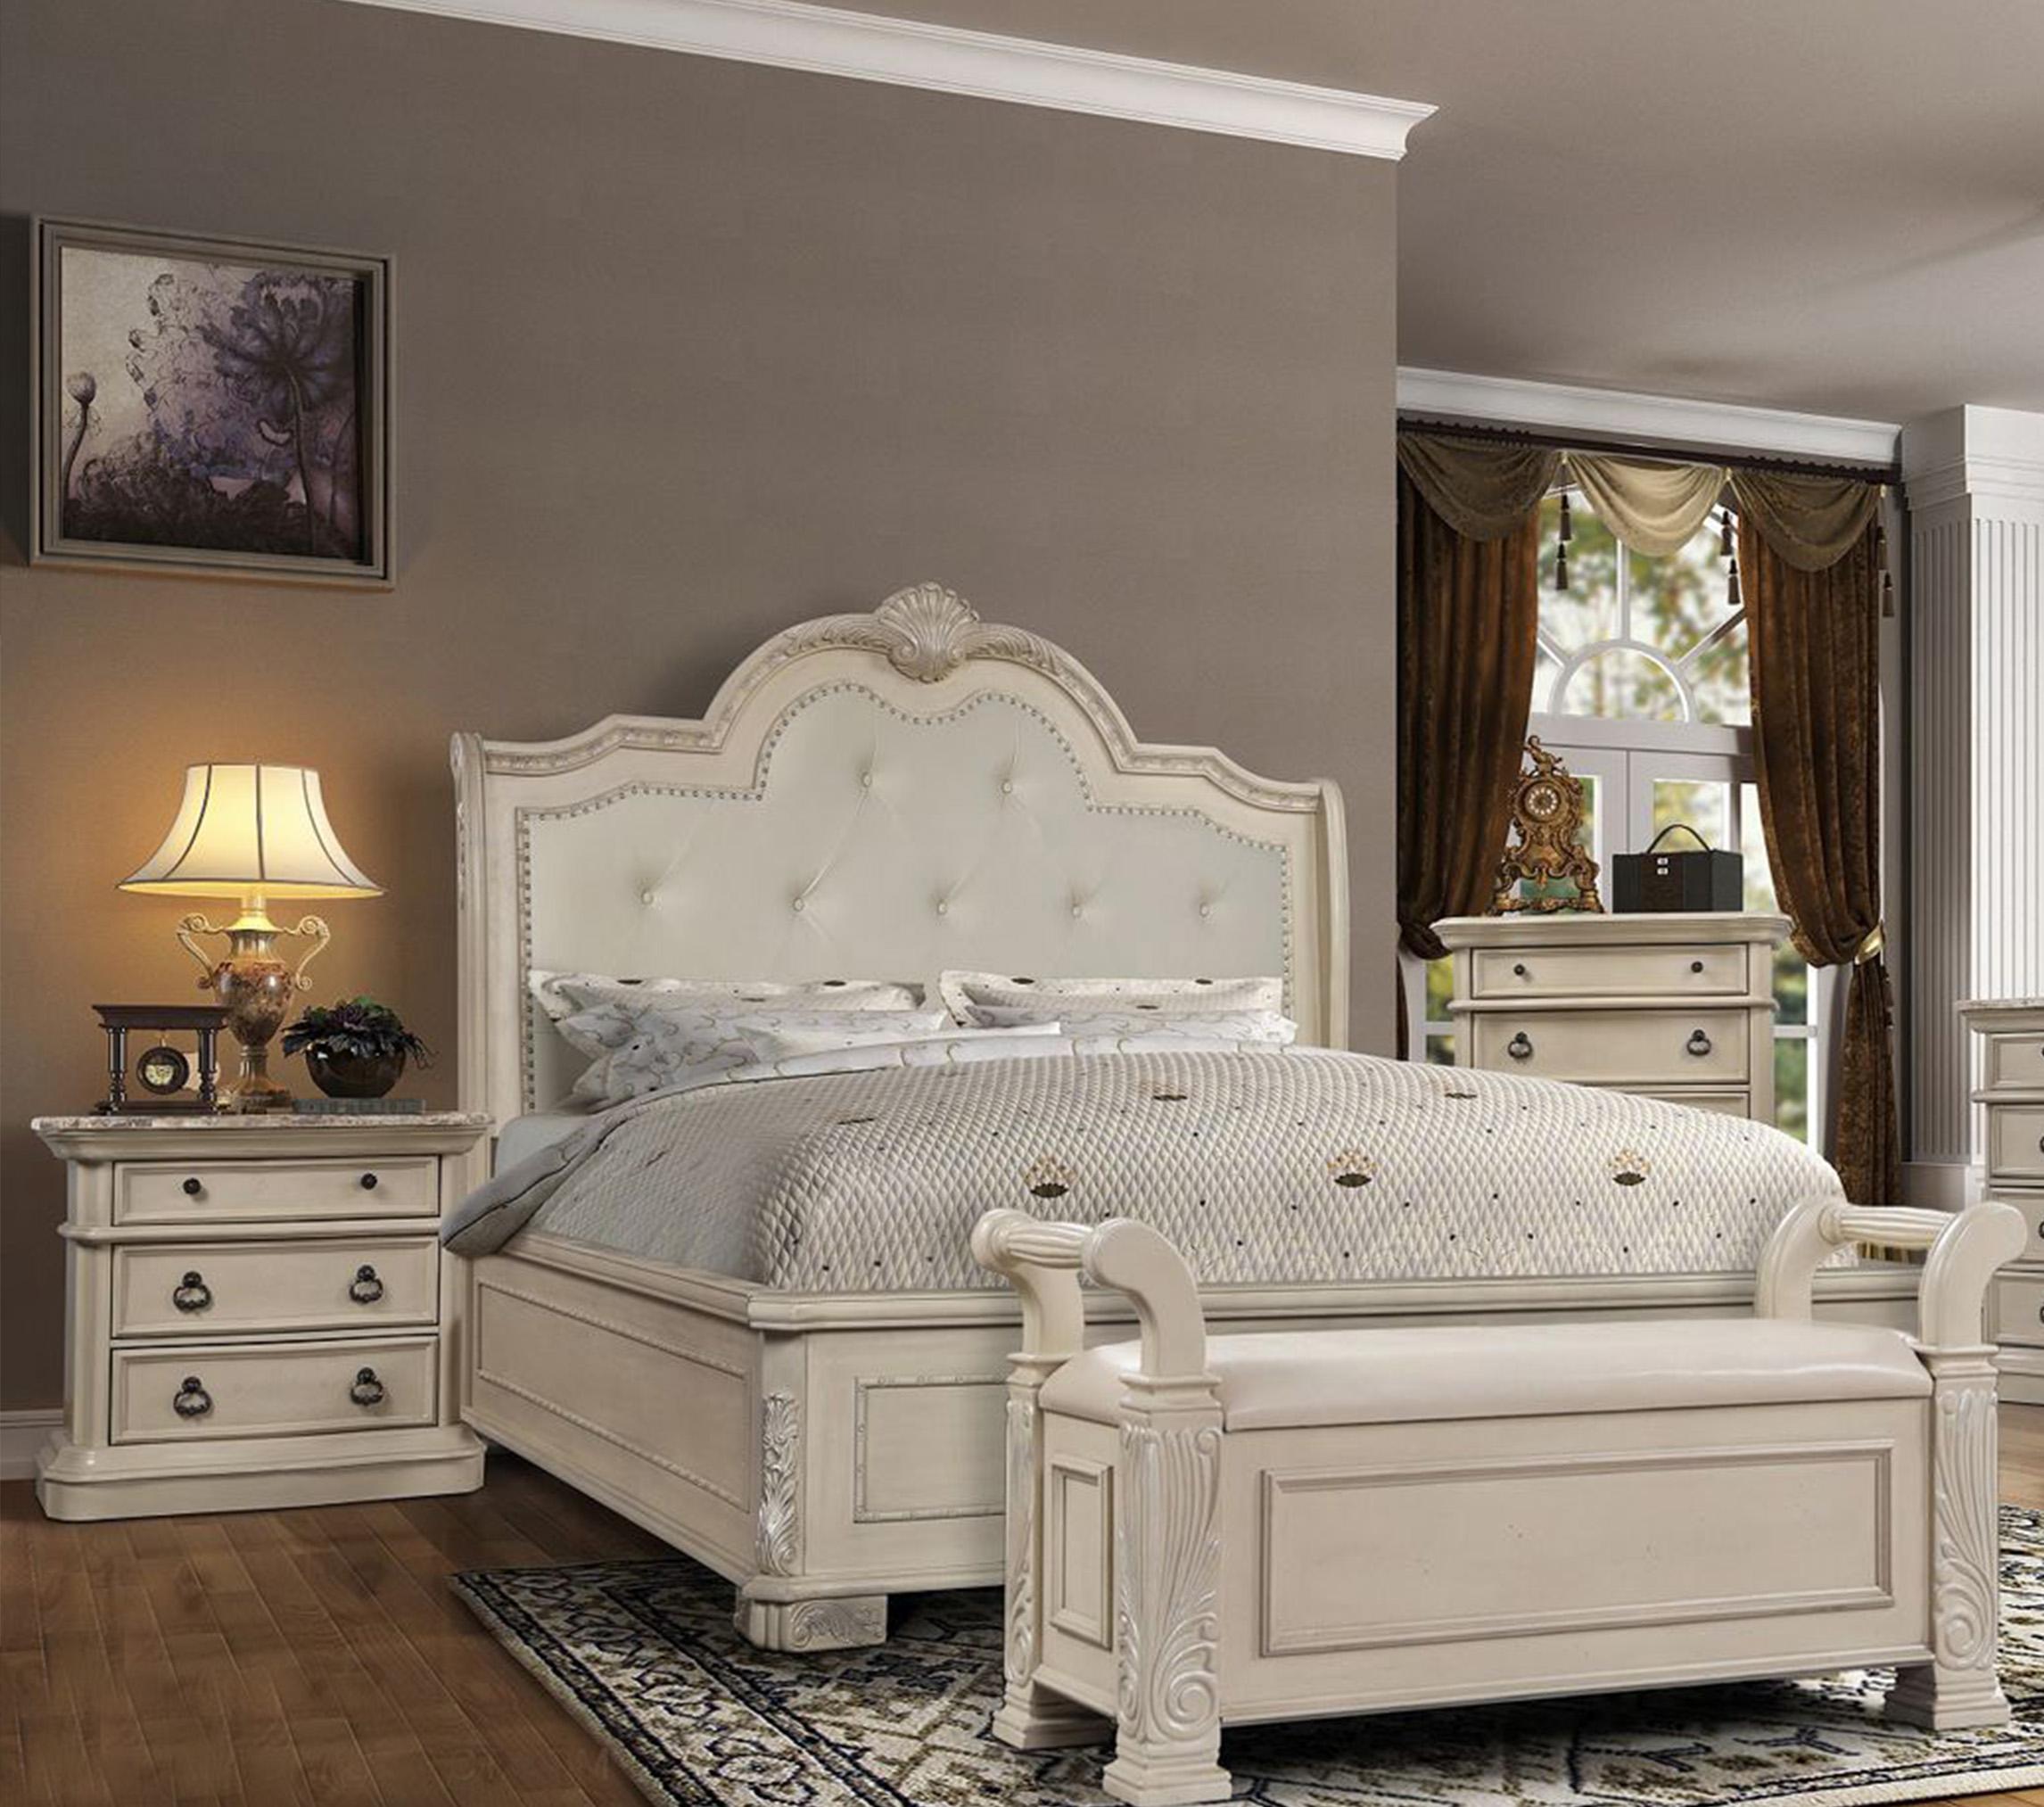 McFerran Furniture B6007 Panel Bedroom Set